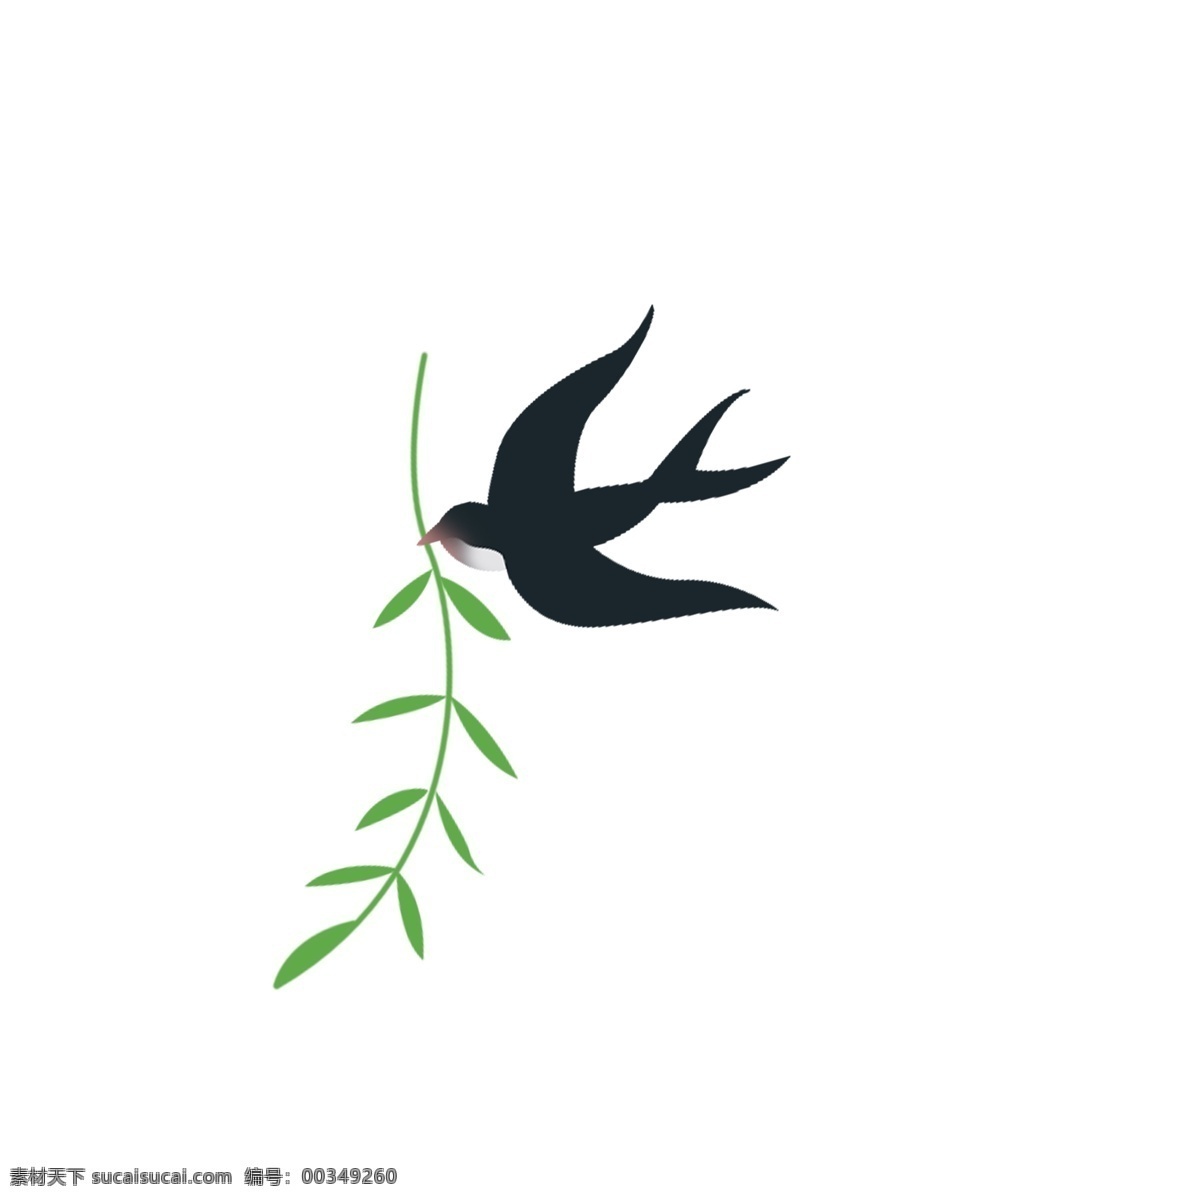 卡通 黑色 燕子 免 抠 图 绿色植物 叶子 植物 绿色生态 卡通燕子 小动物 免抠图